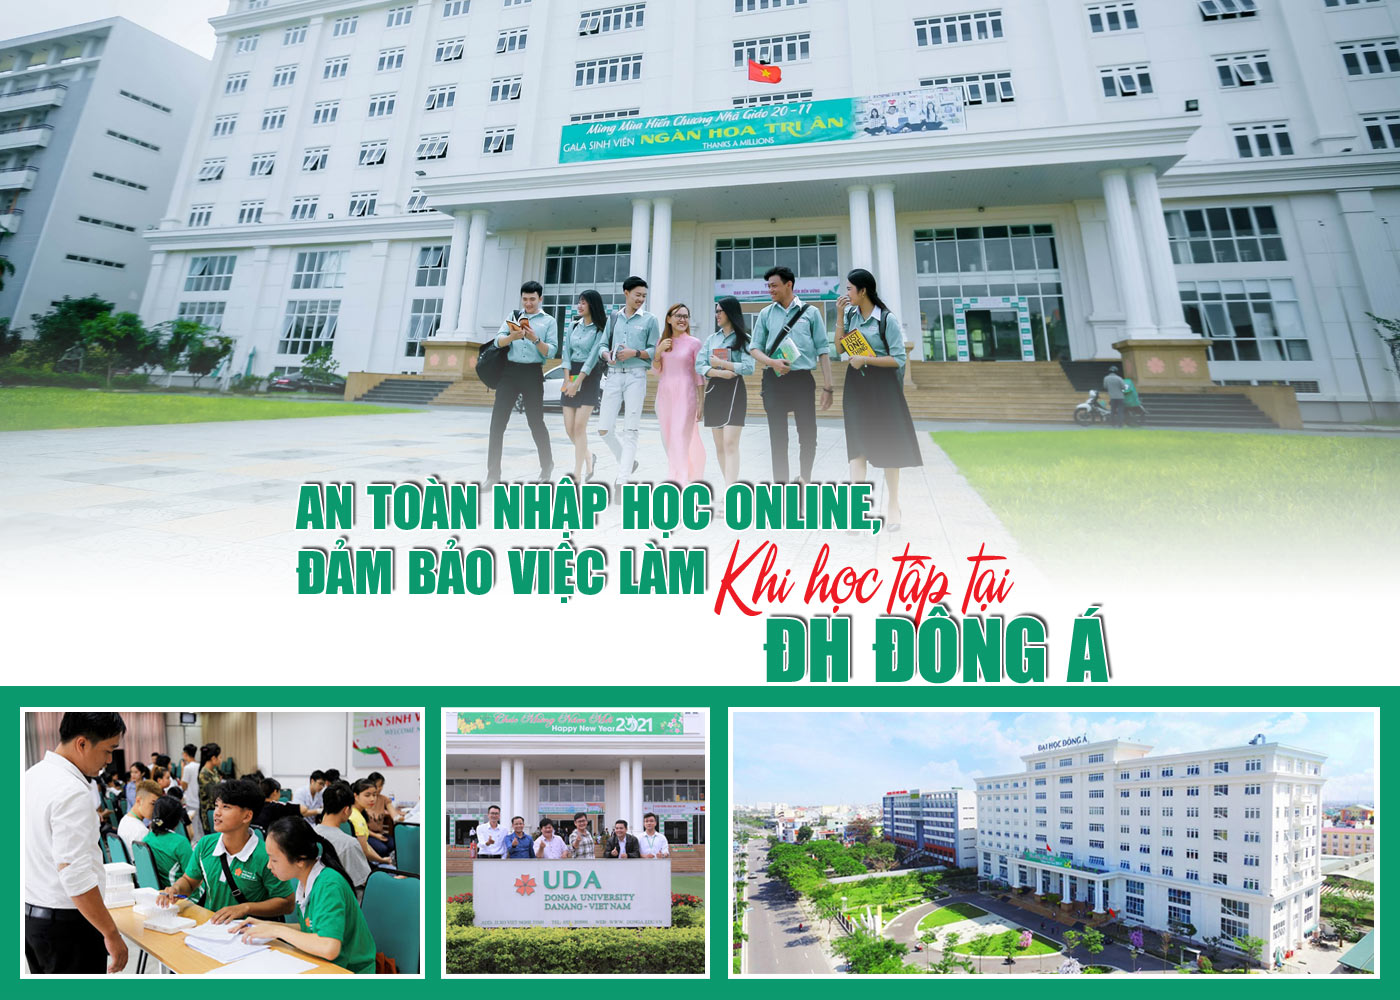 An toàn nhập học online, đảm bảo việc làm khi học tập tại ĐH Đông Á - Ảnh 1